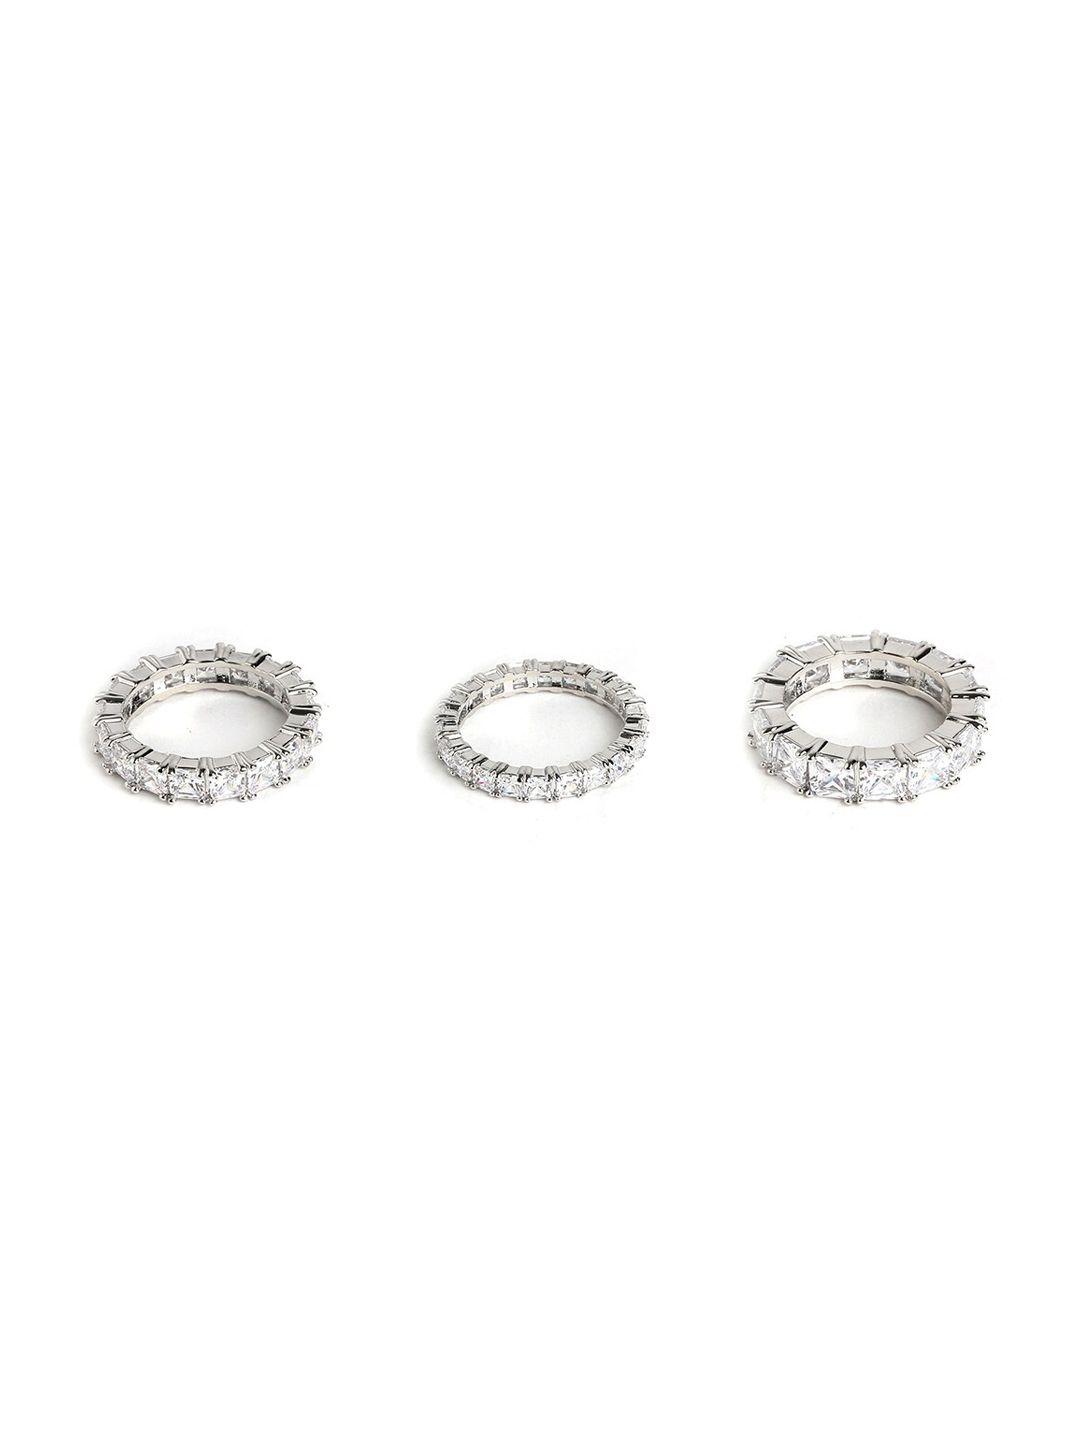 aldo set of 3 silver-toned & white stone studded finger ring